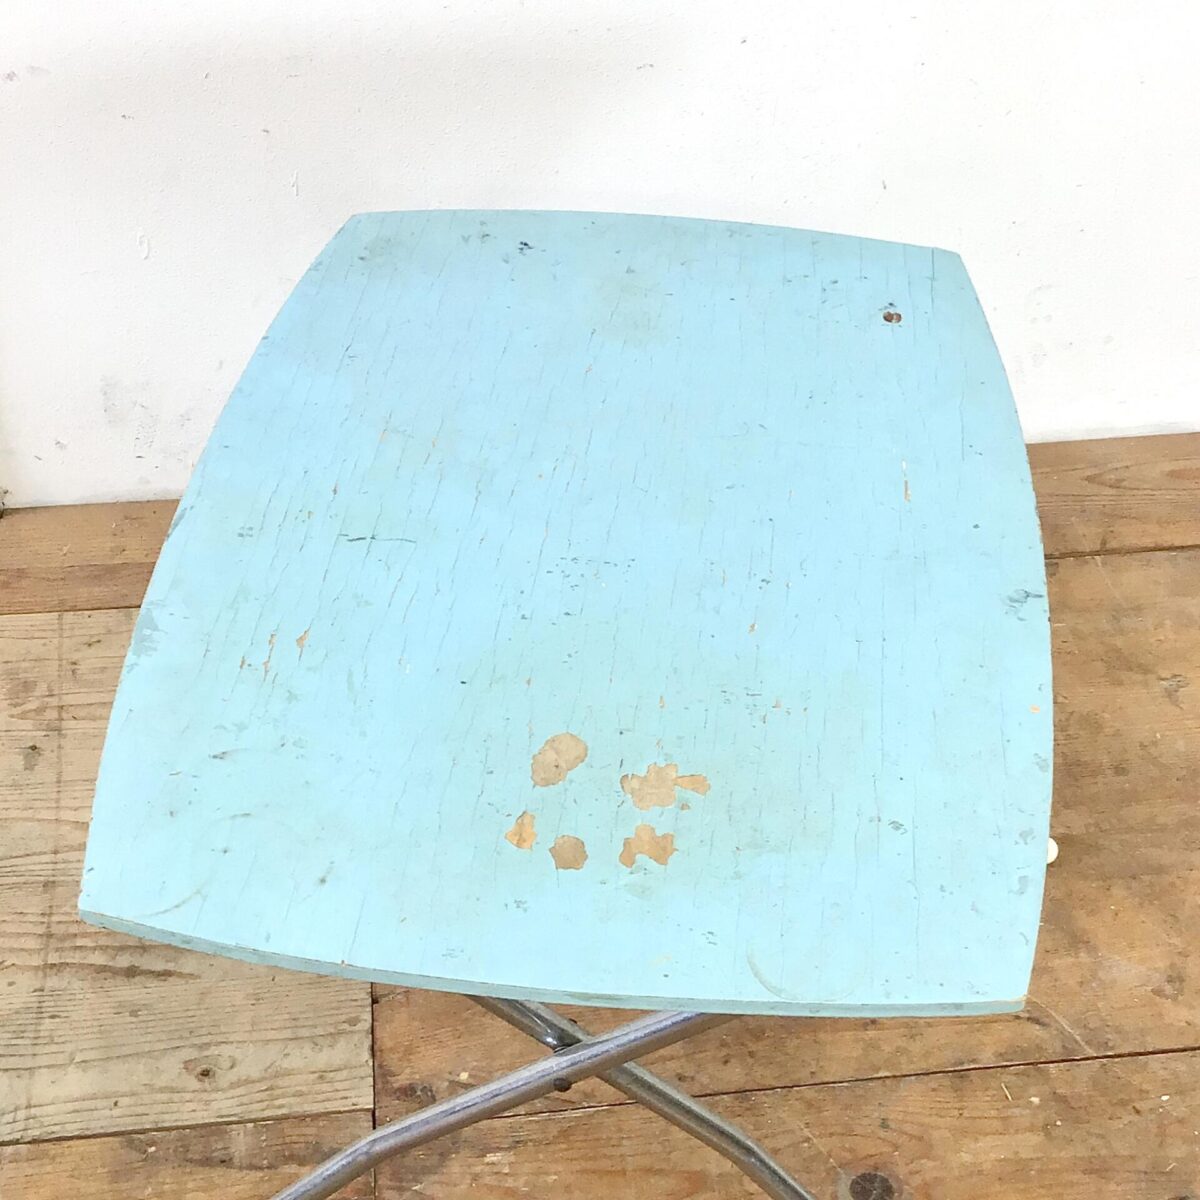 Vintage Kinderstuhl und Tisch. Vom Holländischen Kinderwagen Hersteller Van Delft. Der Stuhl lässt sich zusammen mit dem Tischgestell zum Hochstuhl umbauen. Tischgrösse 56x42cm Höhe 52cm. Sitzhöhe des Stuhls 28cm. 